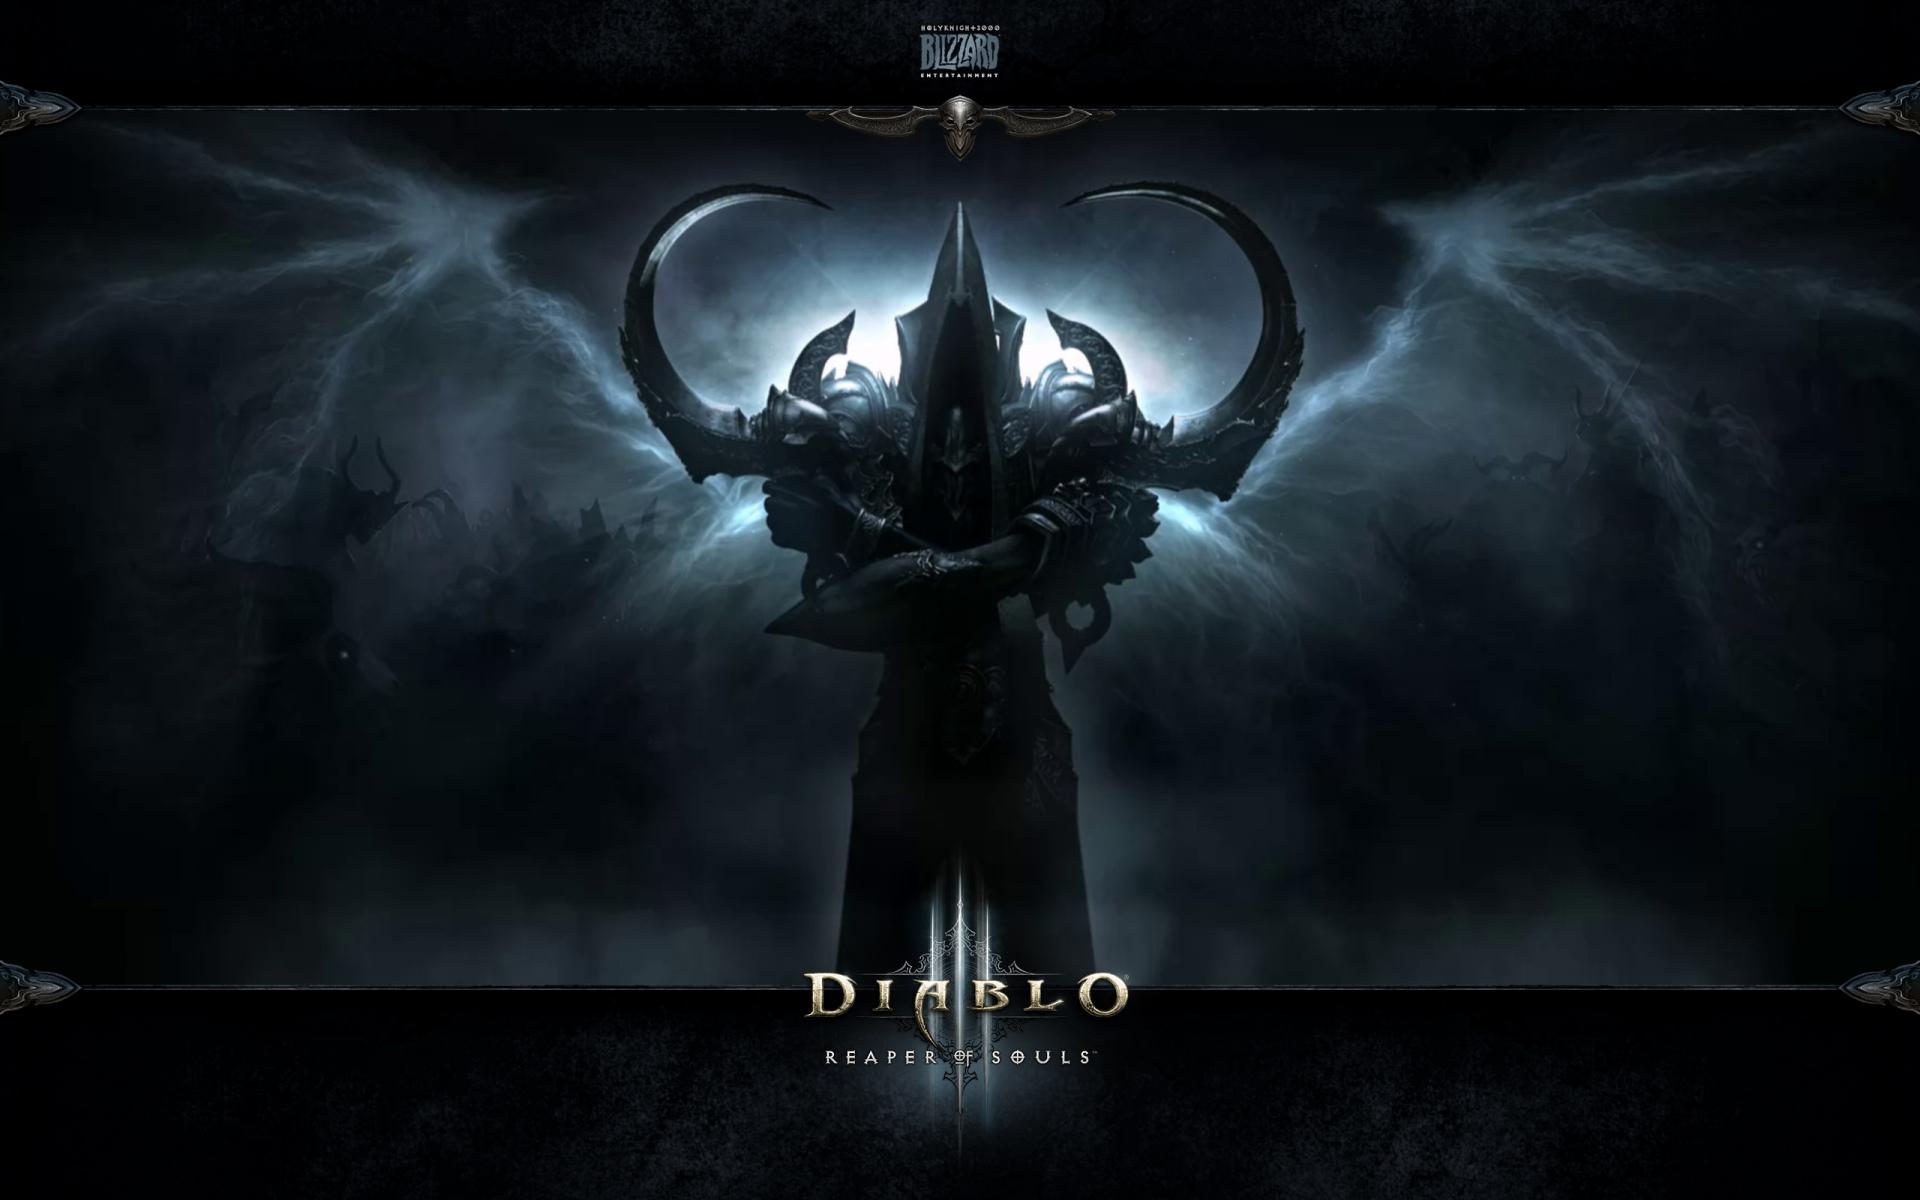 Diablo III Reaper Of Souls wallpapers HD quality